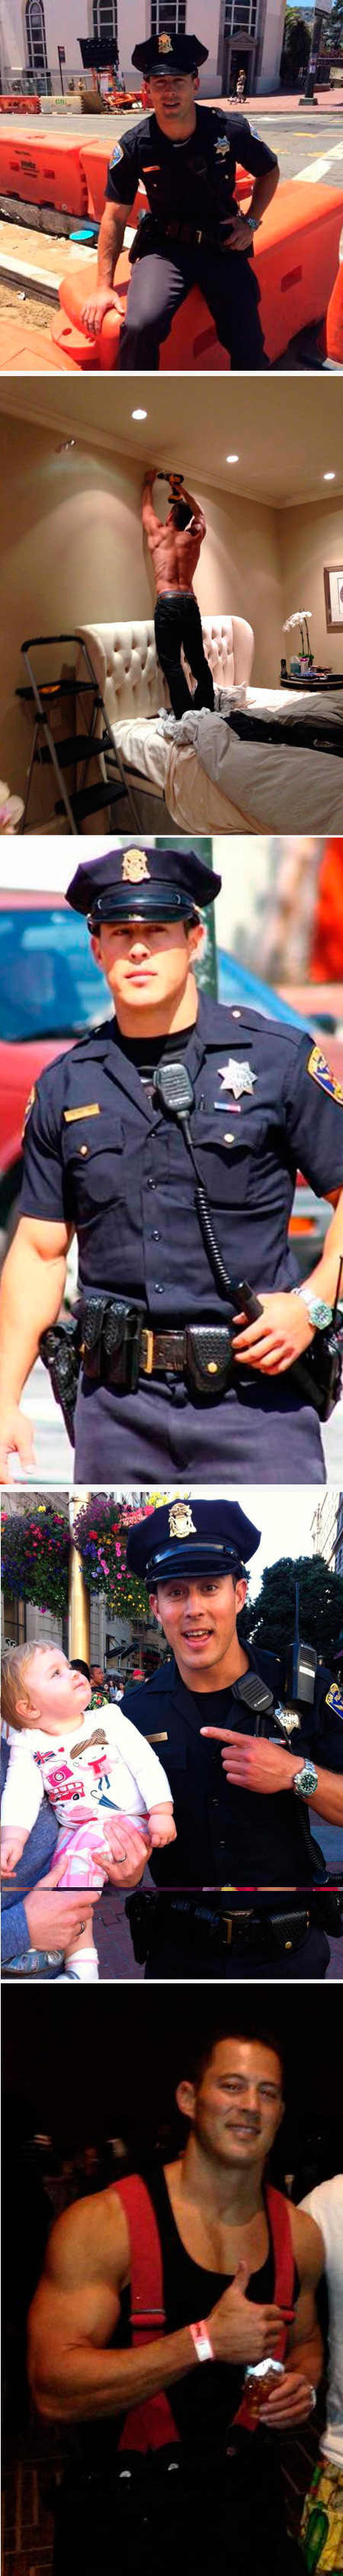 El policía caliente de El Castro